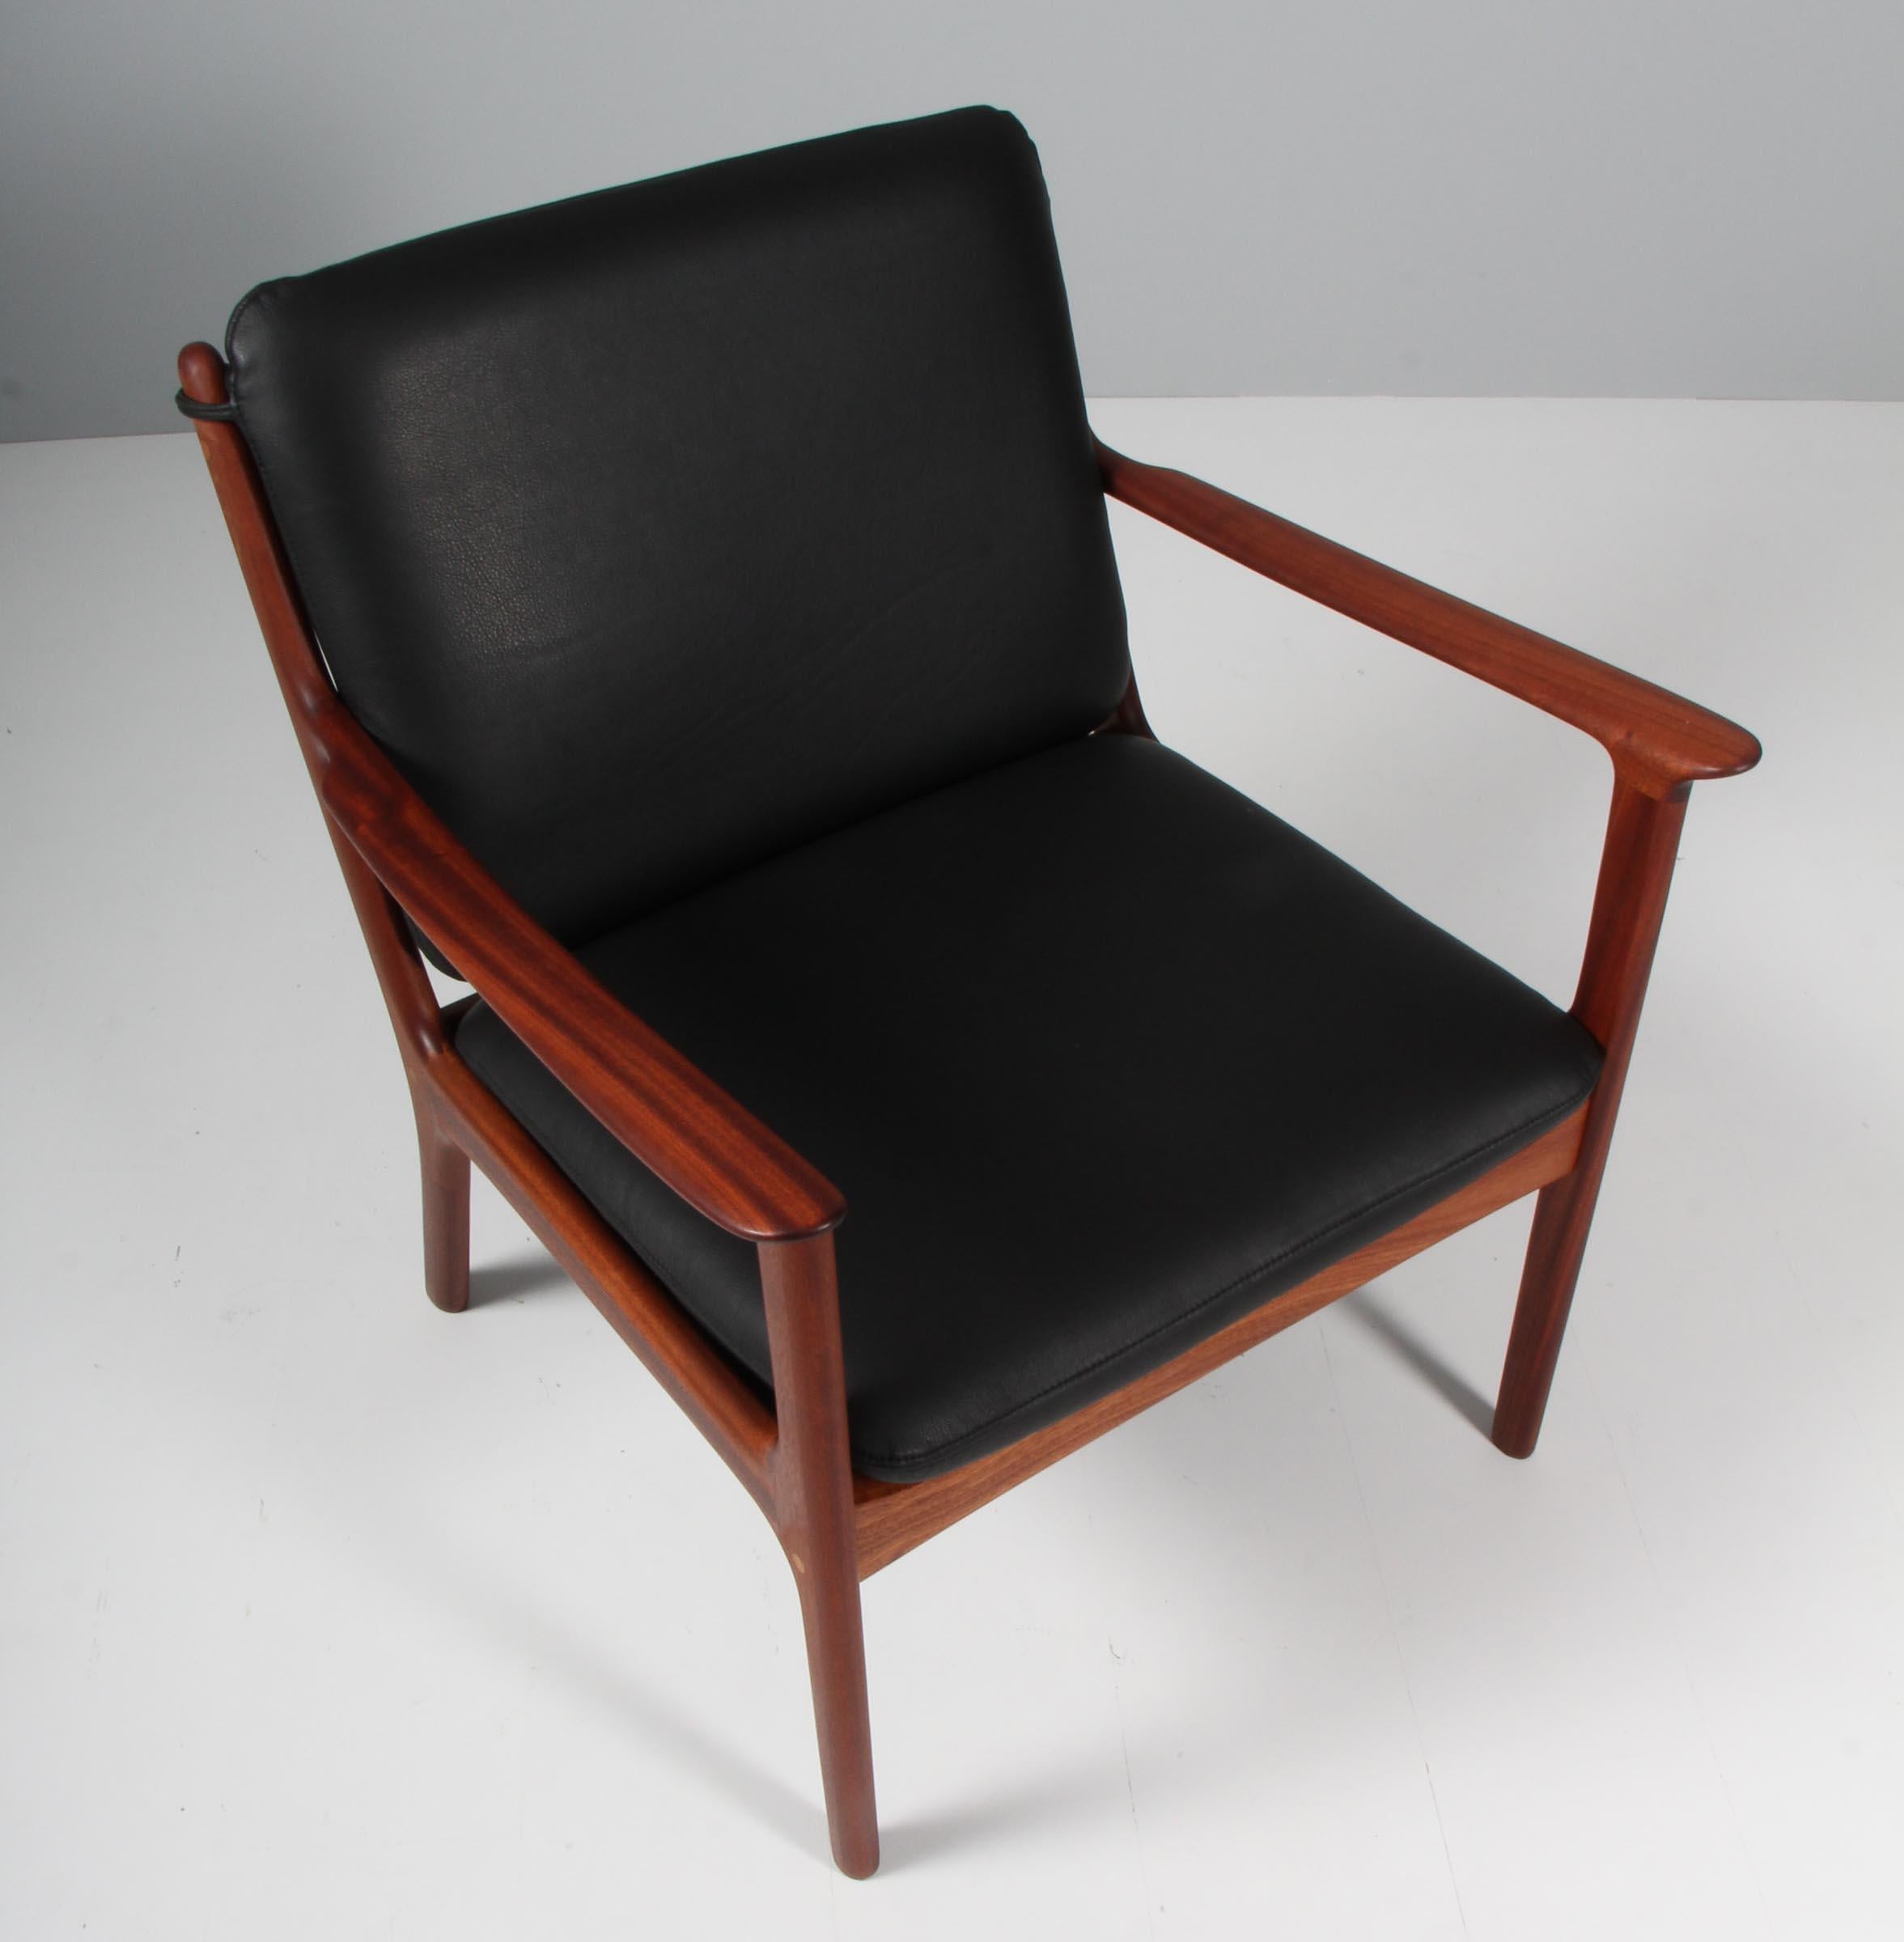 Les fauteuils de salon Ole Wanscher sont neufs et recouverts de cuir aniline noir. 

Fabriqué en acajou massif huilé.

Modèle PJ 112, fabriqué par Poul Jeppesen.

  